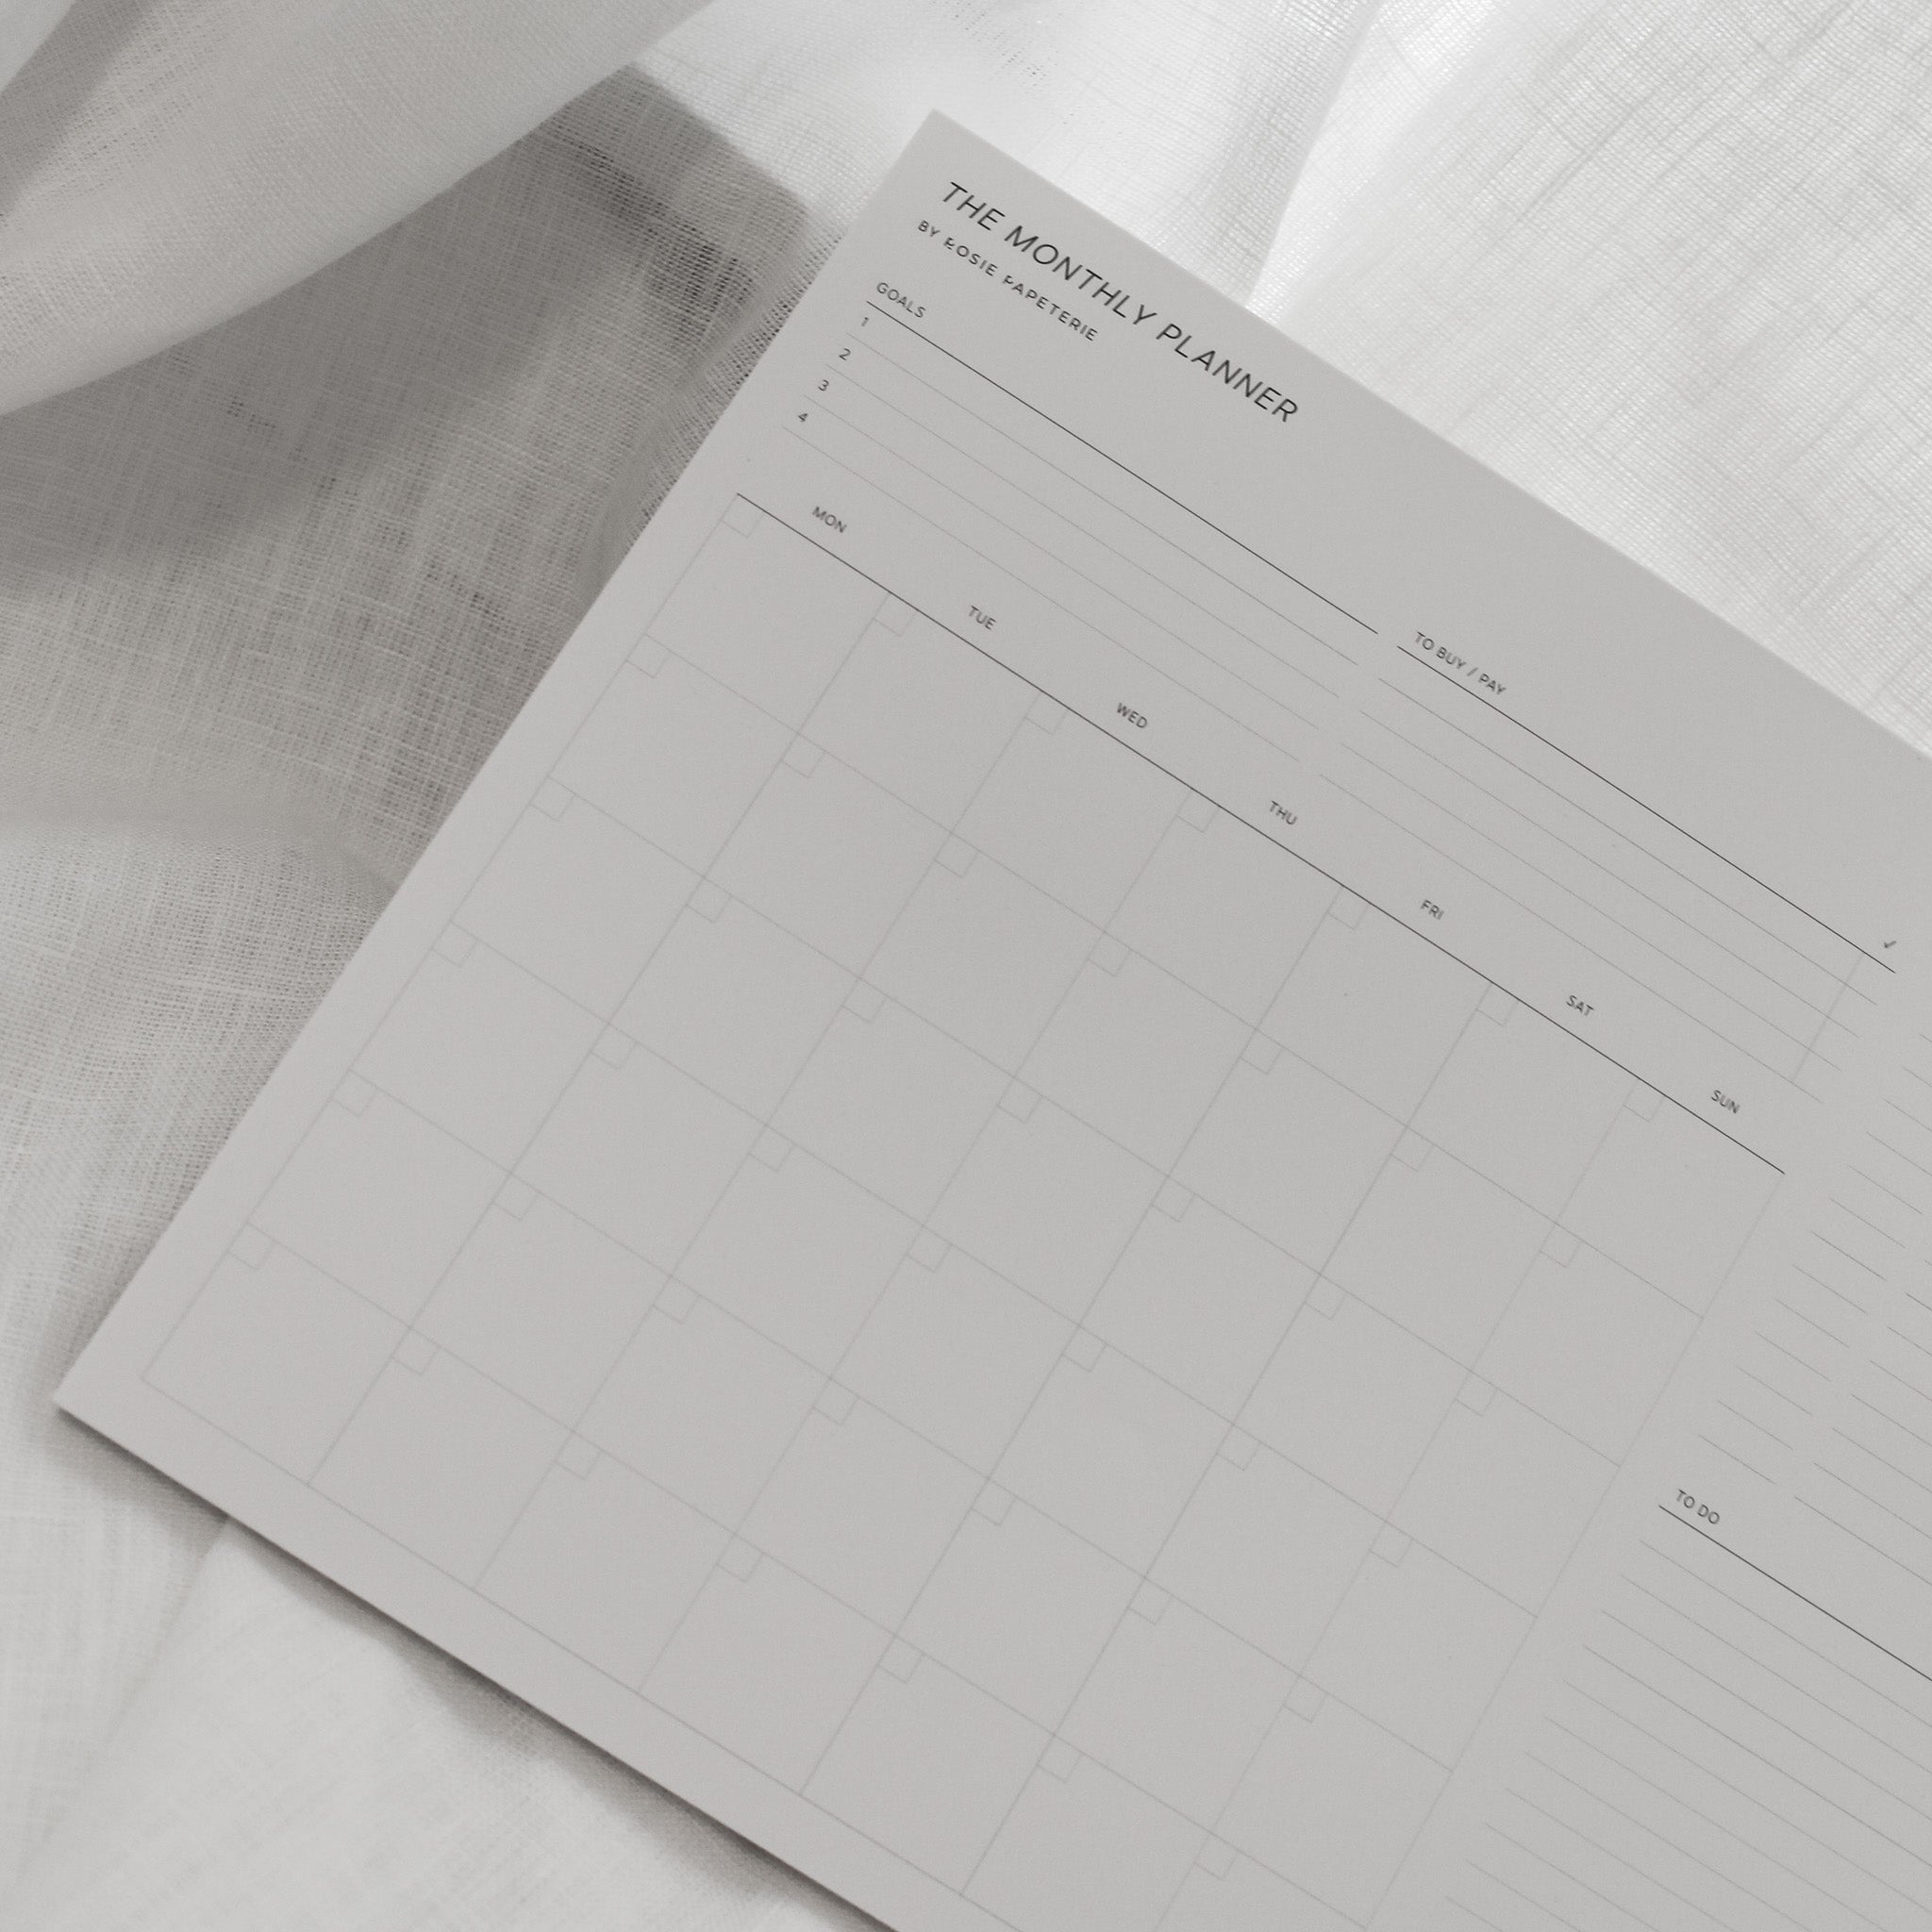 Le planificateur mensuel | Bloc-Notes